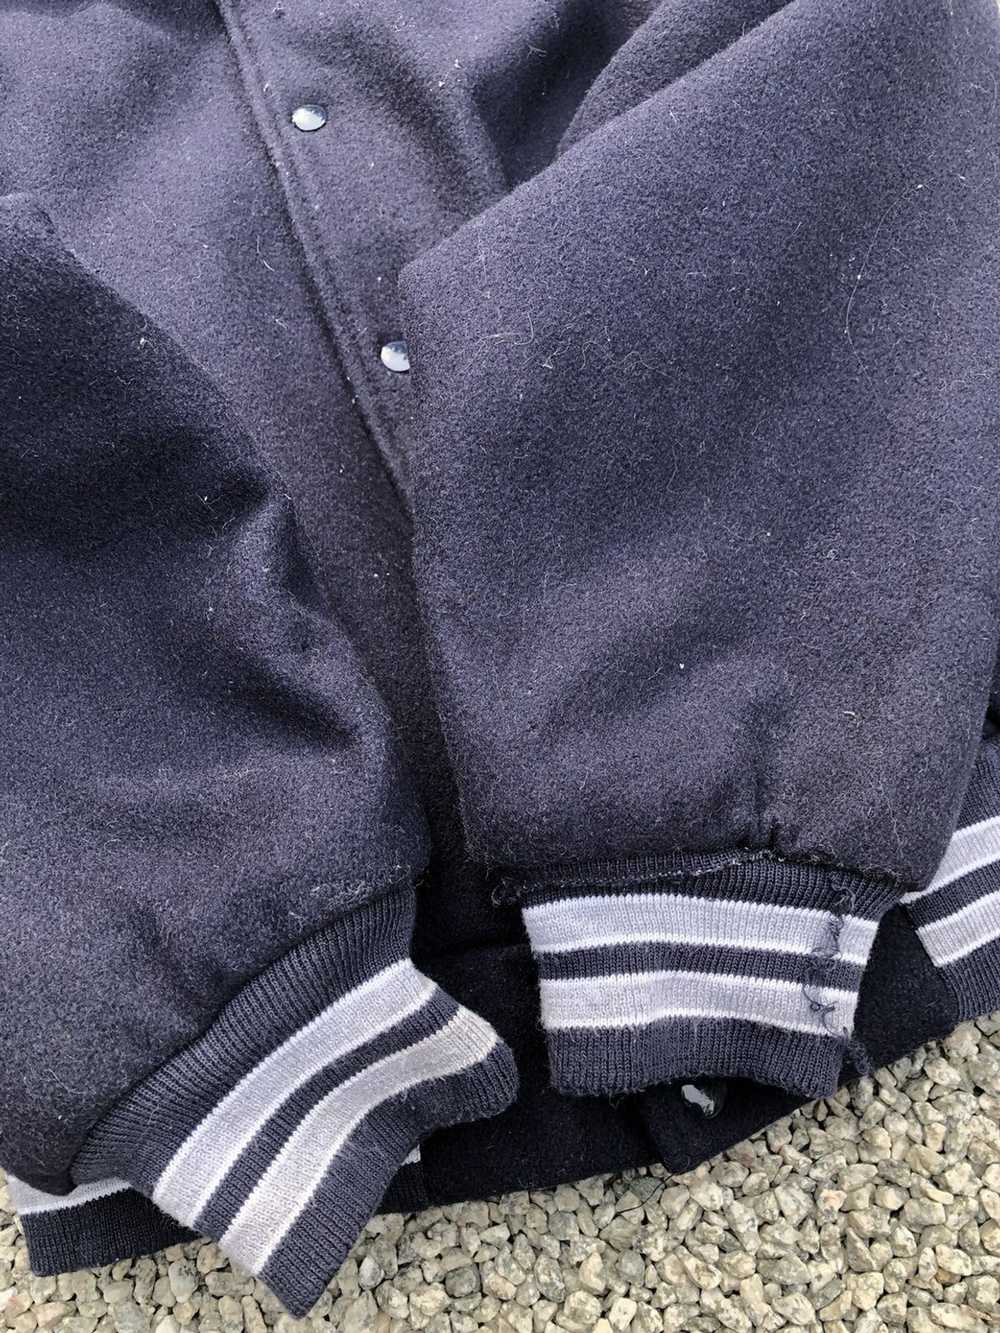 American College × Varsity Jacket × Vintage VINTA… - image 5